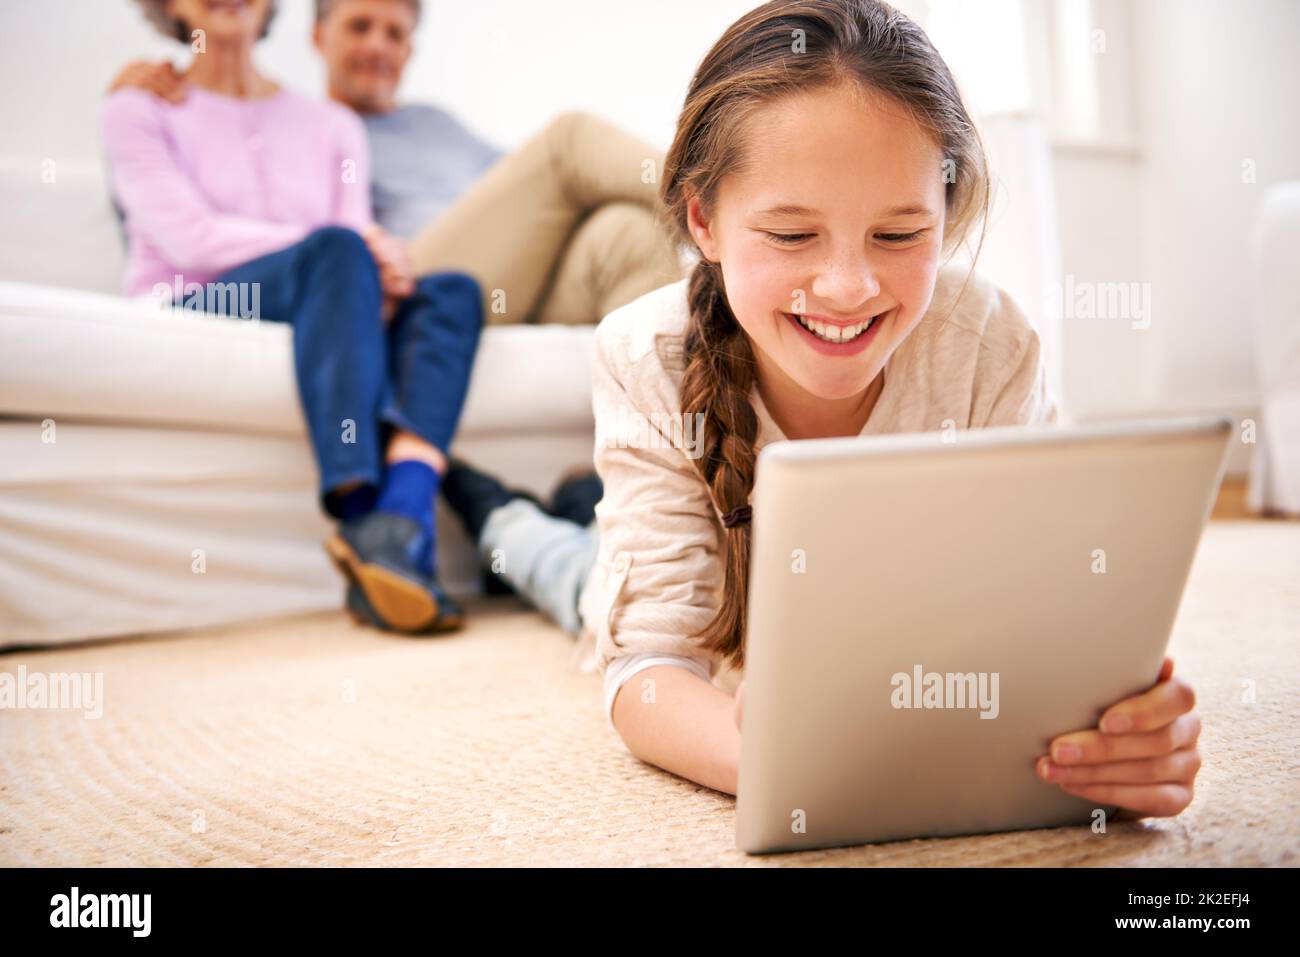 Unterhalten bleiben, wo immer sie ist. Aufnahme von Großeltern, die ihre Enkelin mit einem digitalen Tablet beobachten. Stockfoto